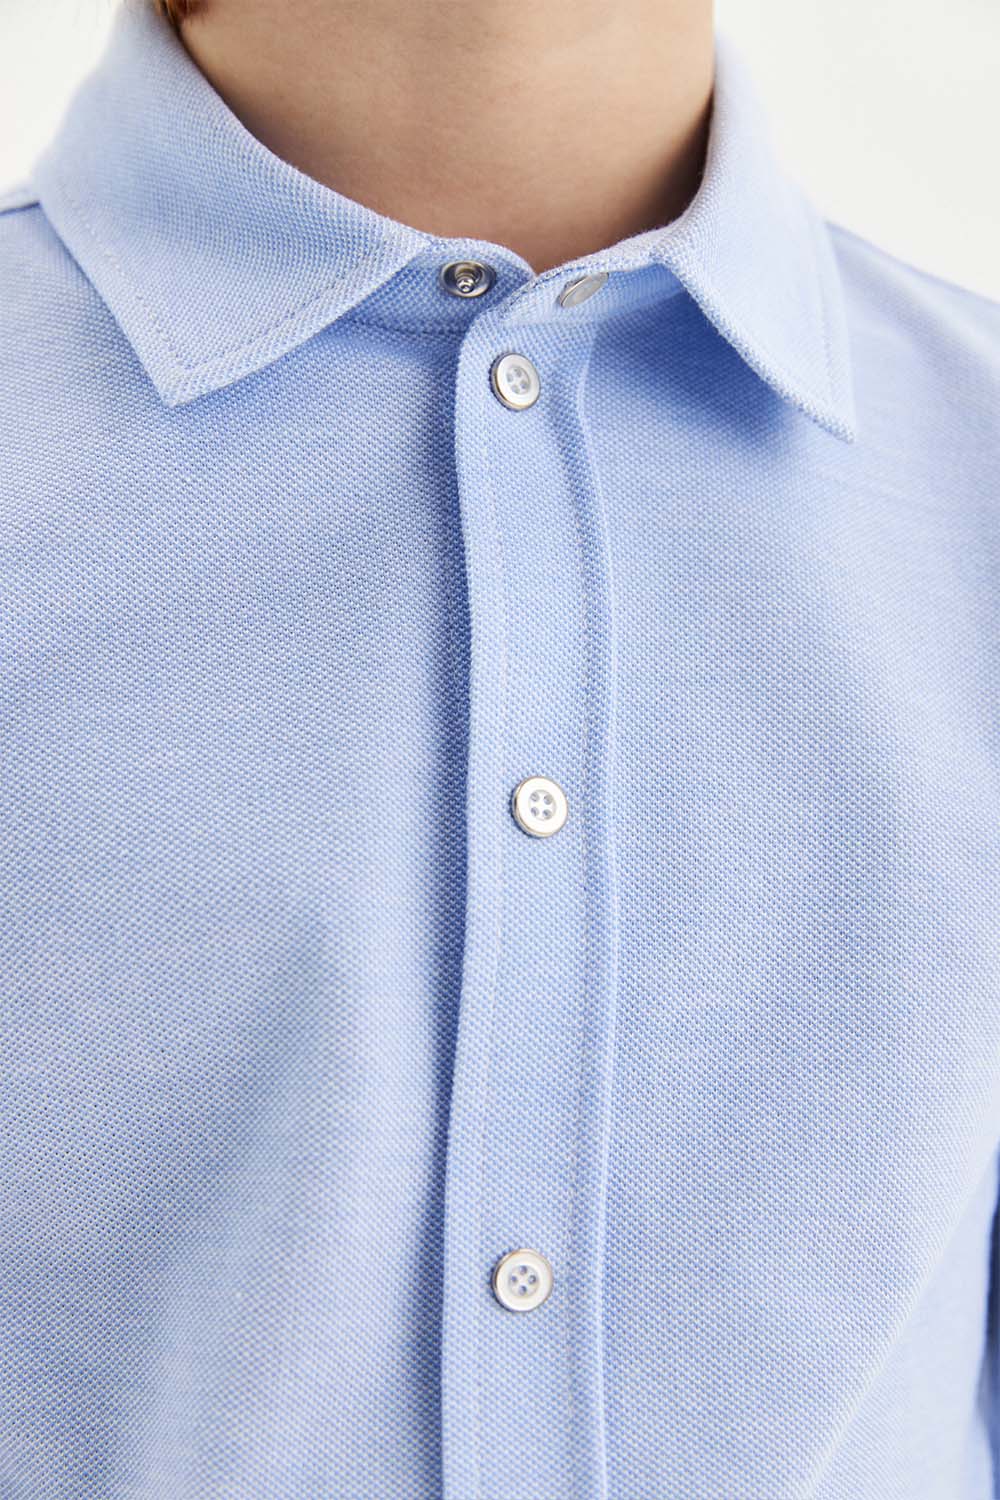 Трикотажная сорочка Comfort из 100% хлопка на кнопках (SSFSB-228-14101-365) Silver spoon